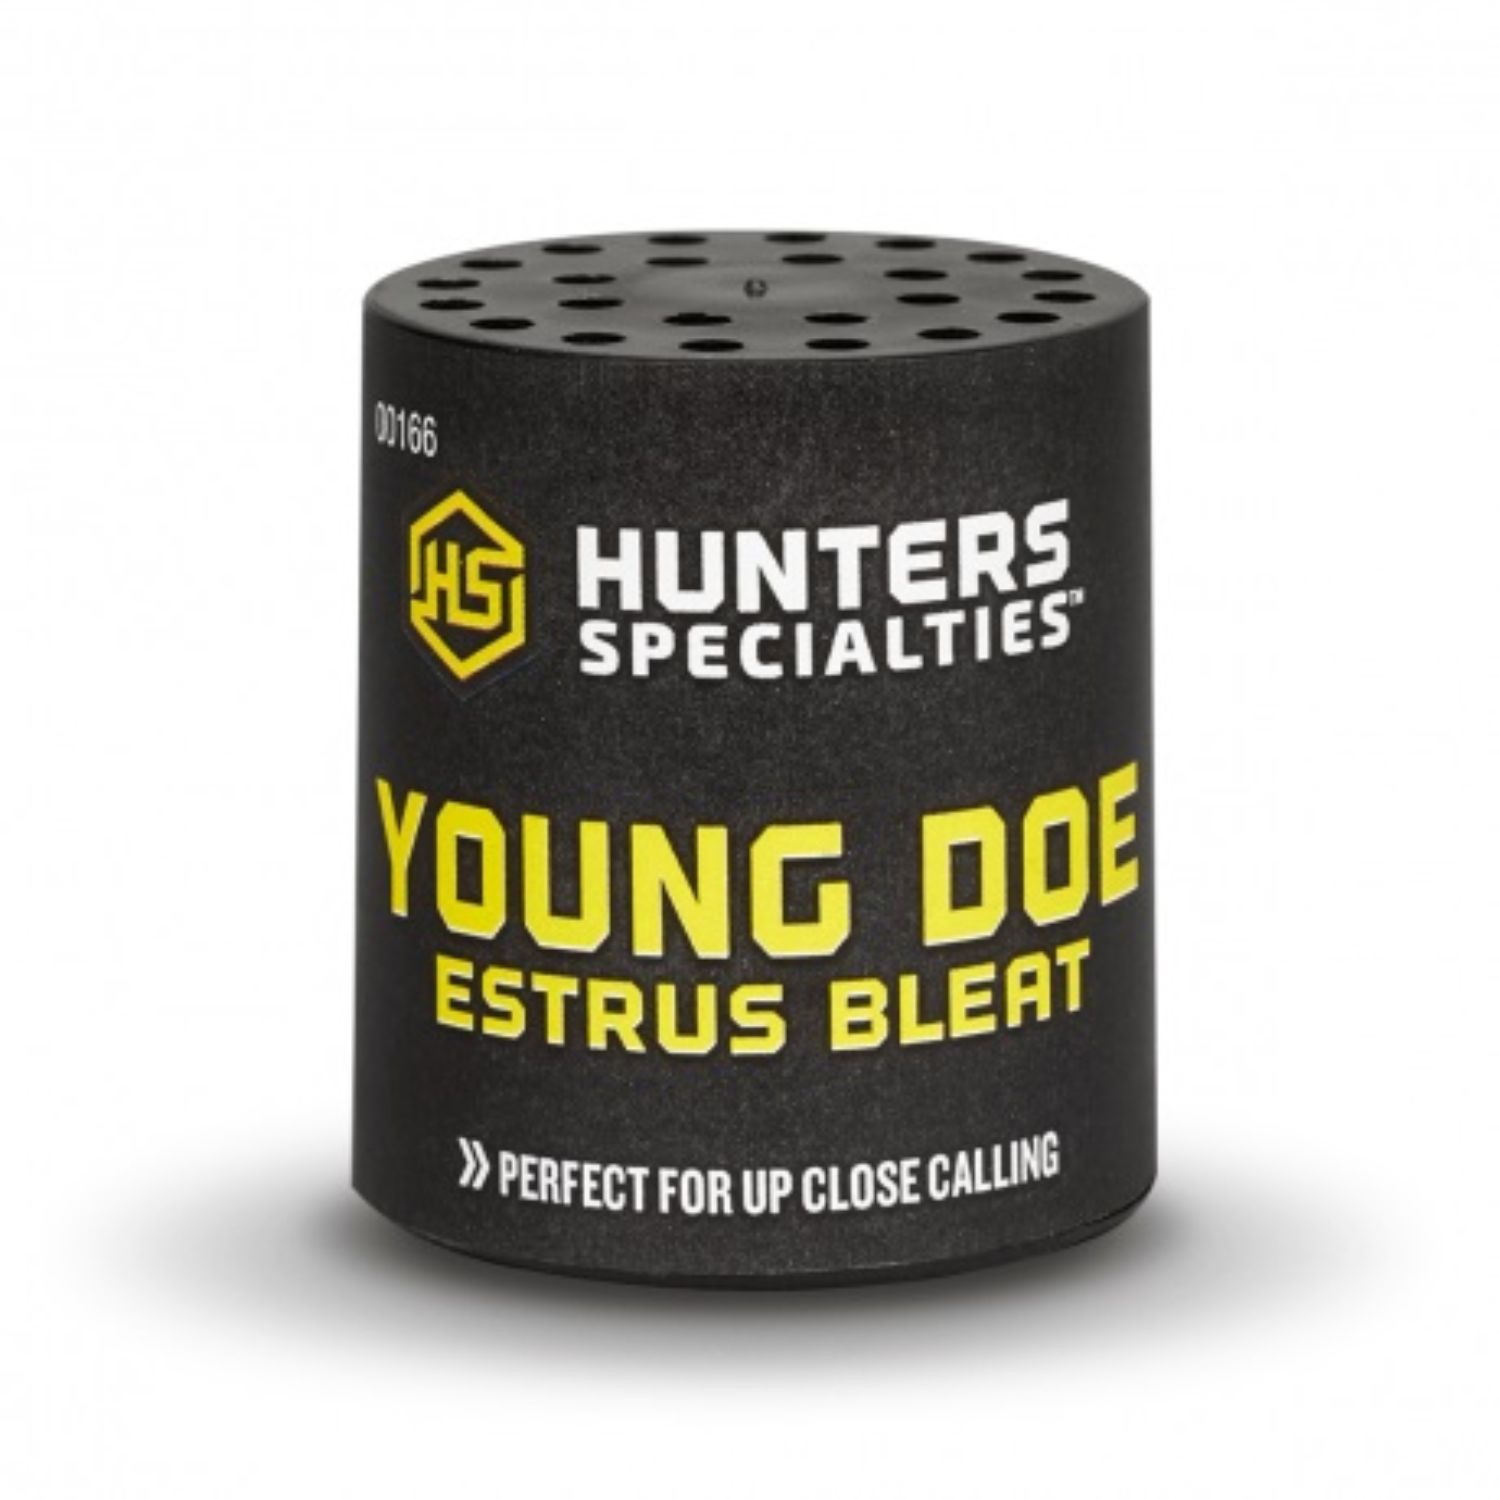 Hunters Specialties Bleat Doe Estrus Young